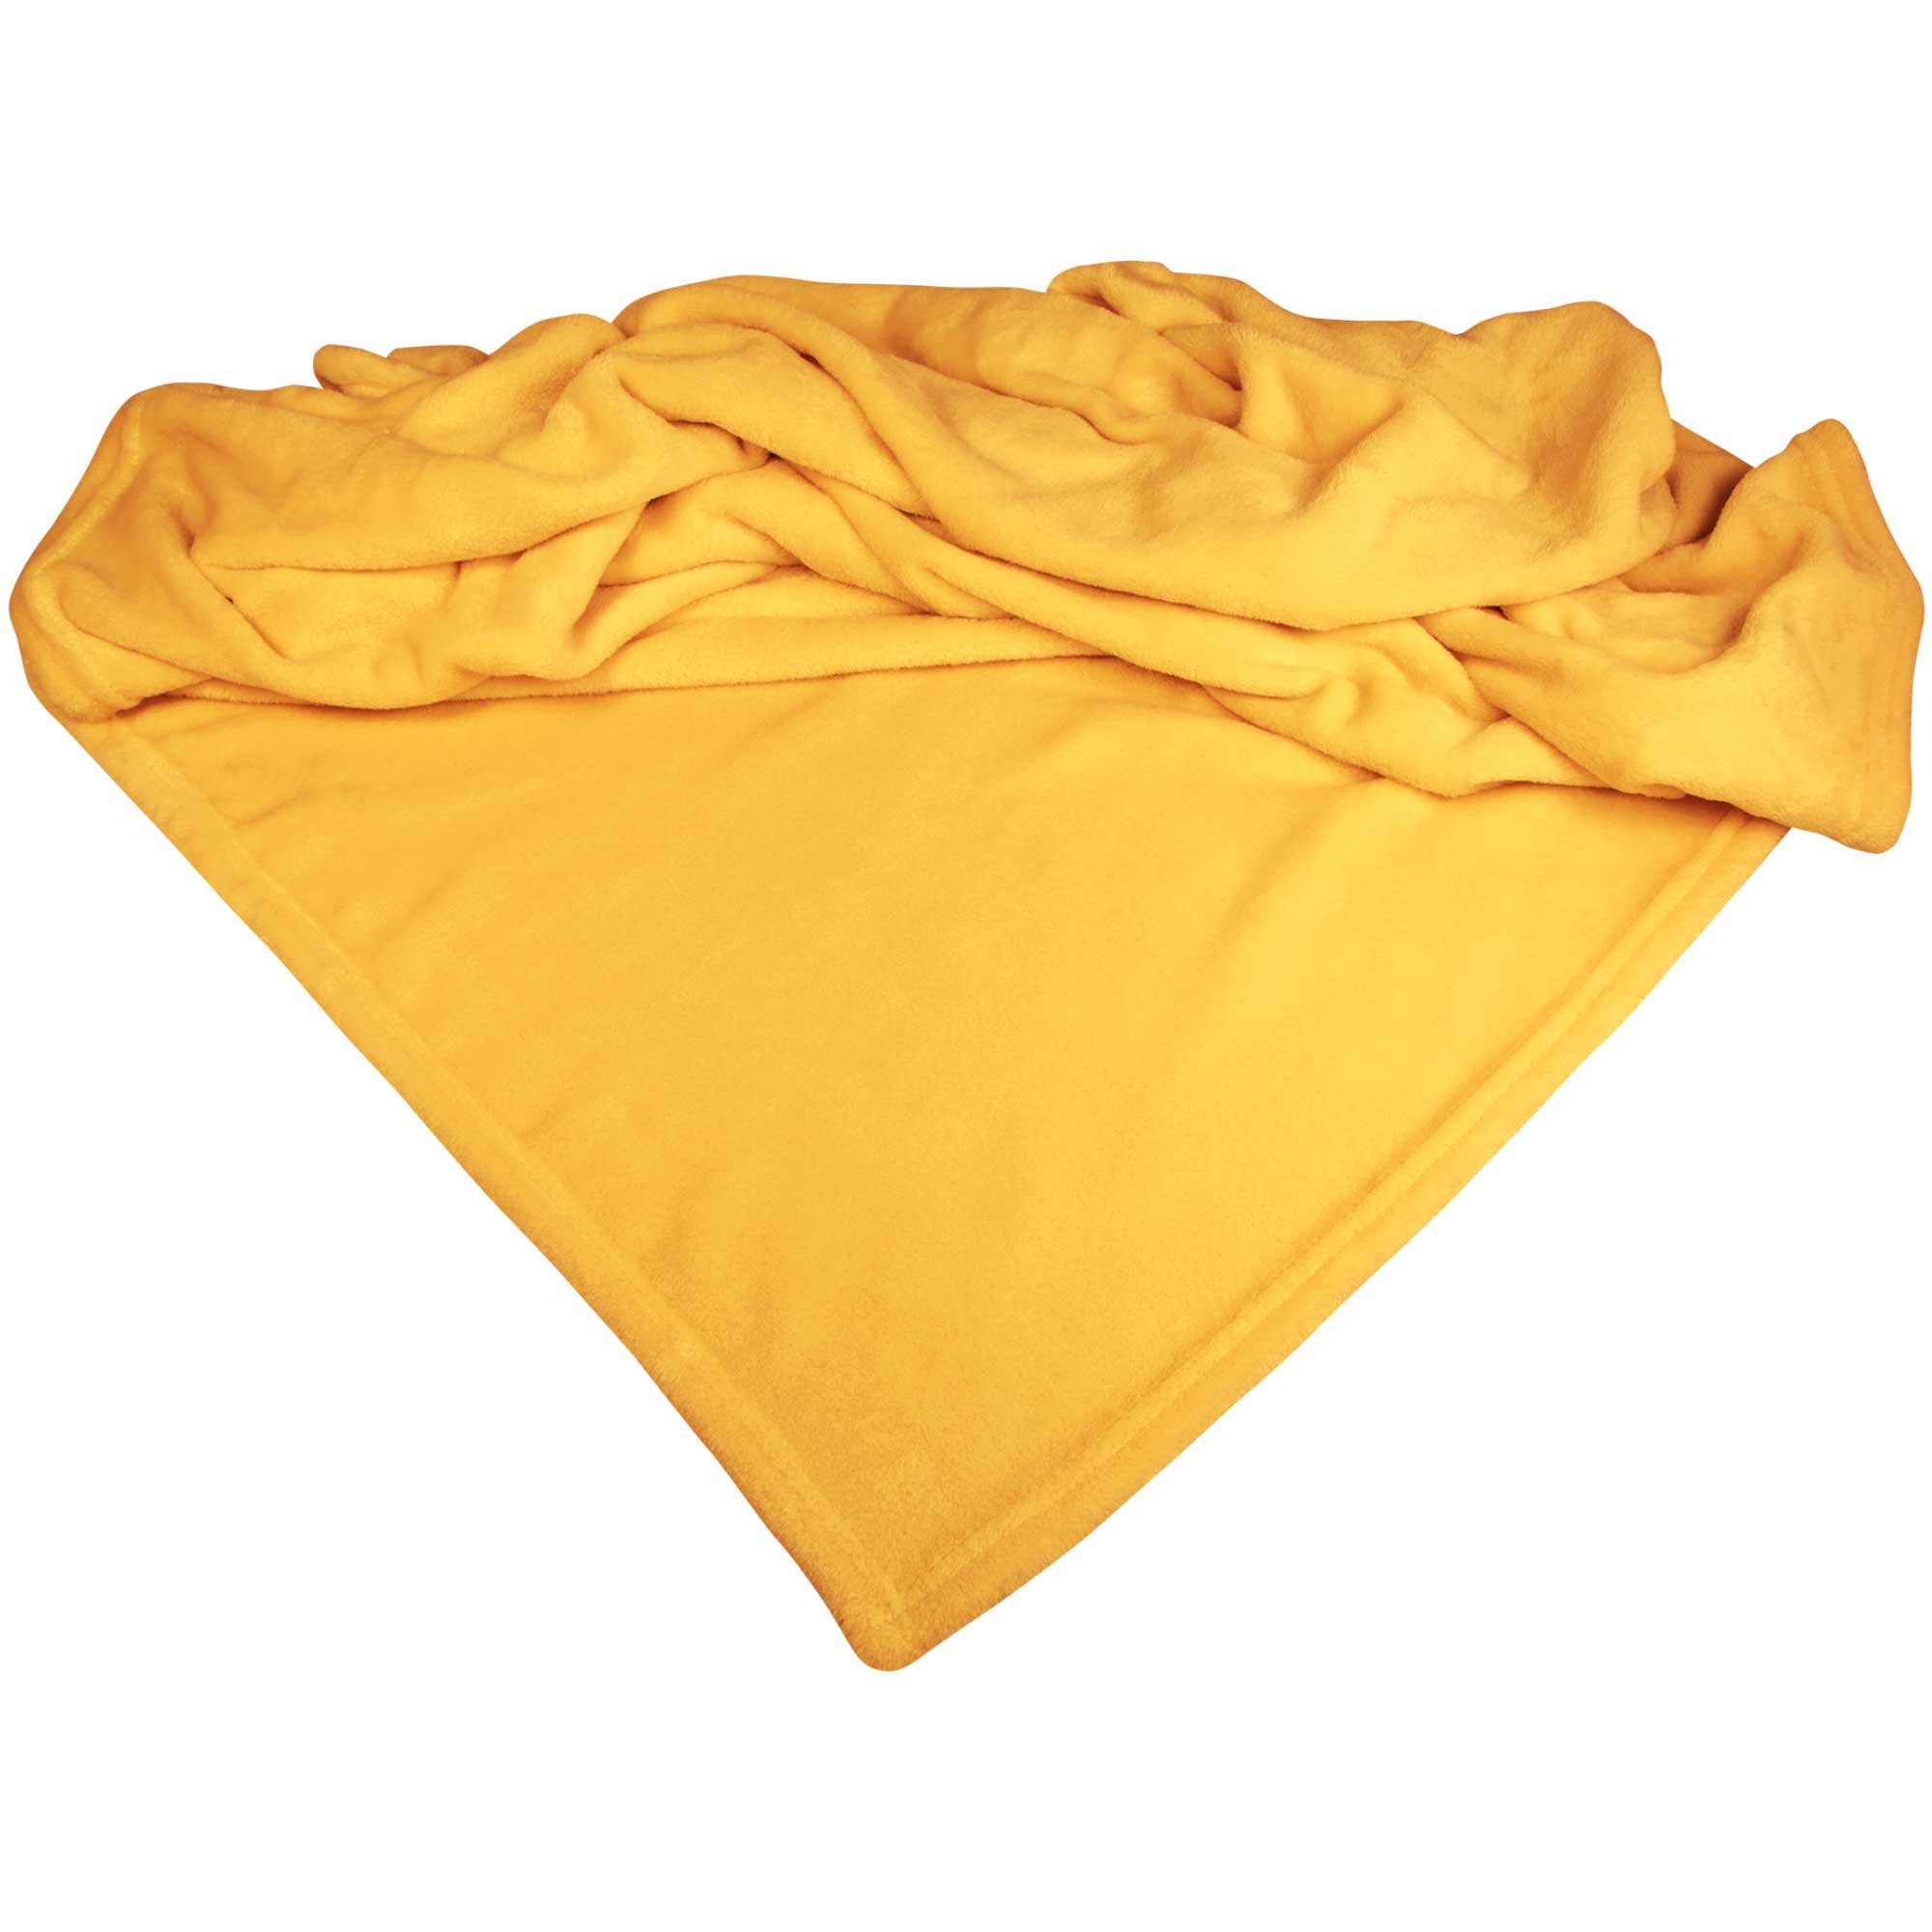 Sofaschoner Mikrofaserdecke Premium für den Hund Schecker, Bis 60°C waschbar Gelb | Sofaschoner